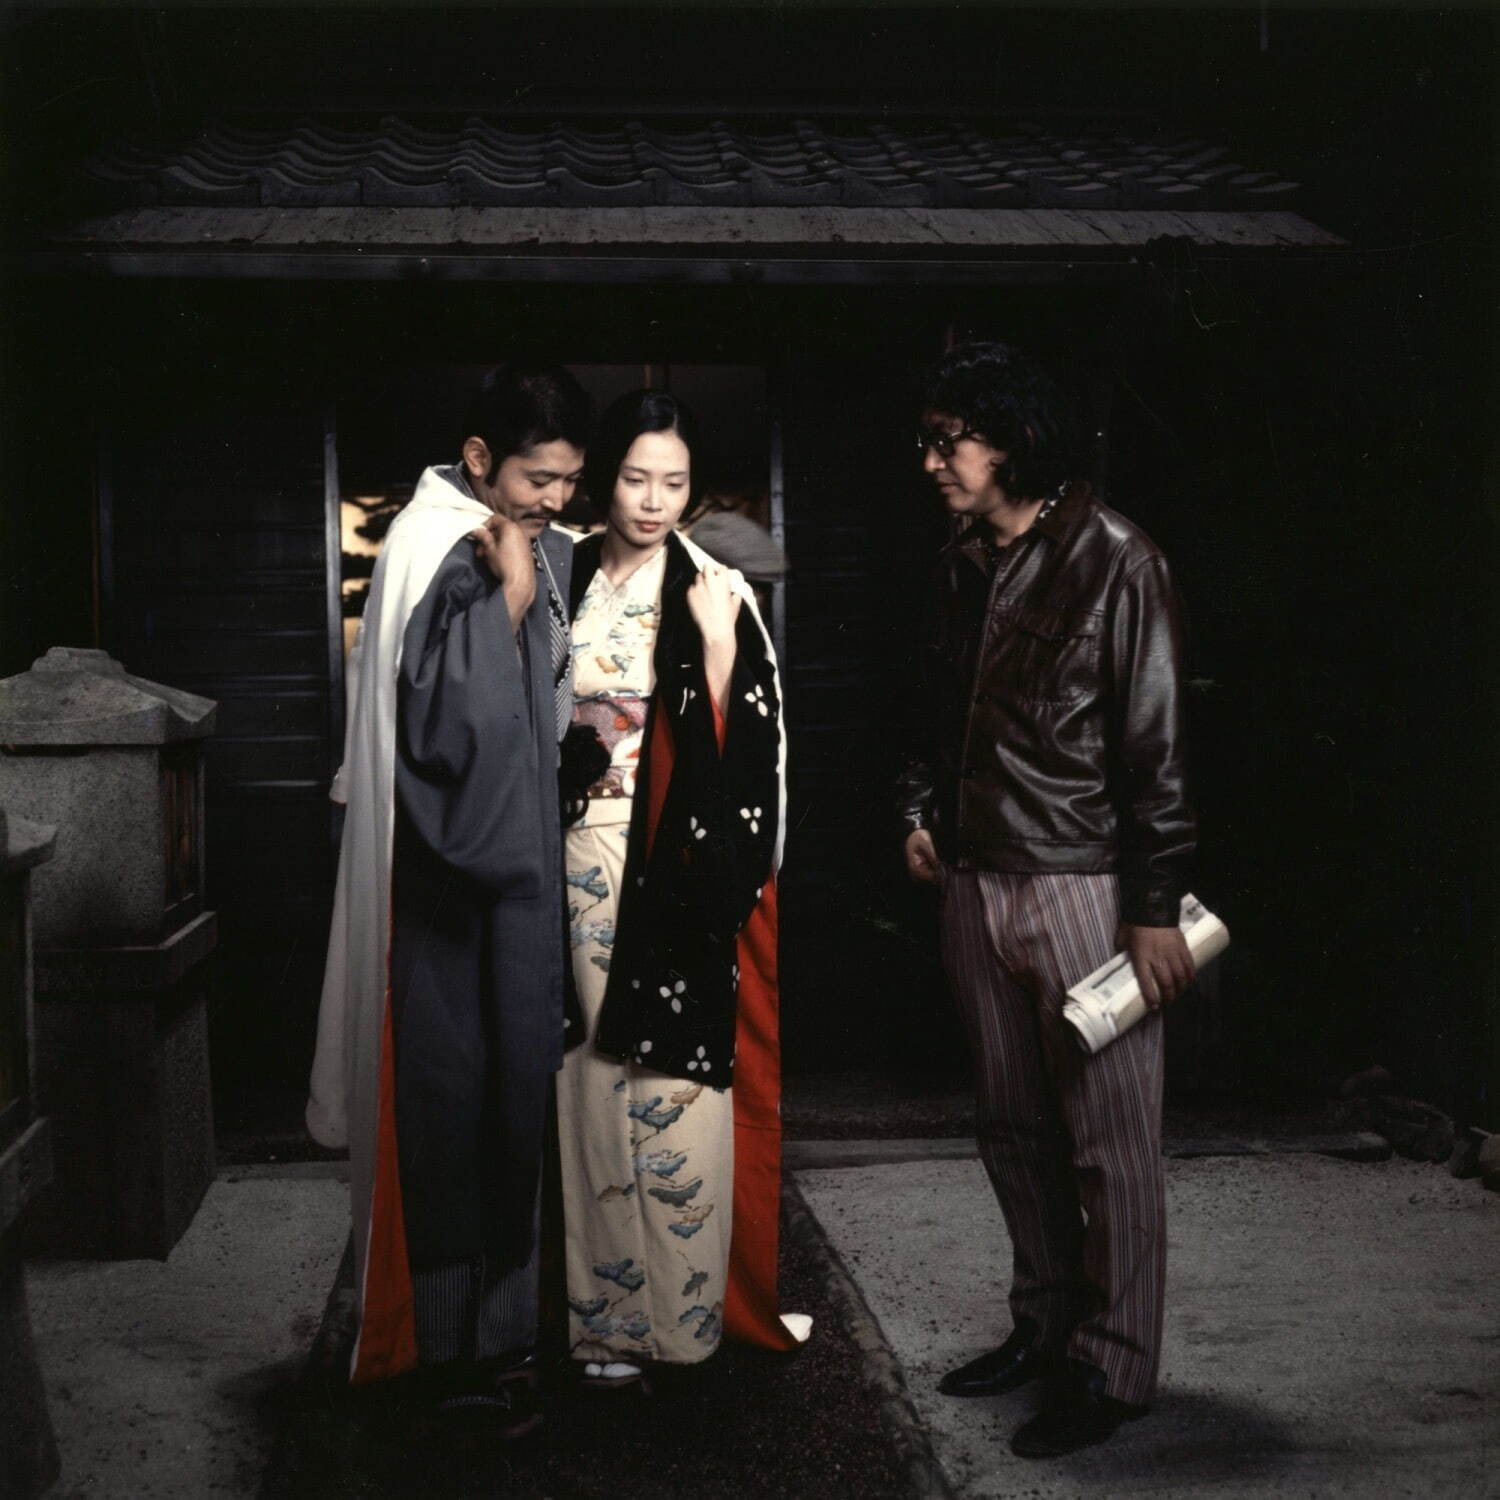 『愛のコリーダ』 1976年　撮影スナップ
©大島渚プロダクション